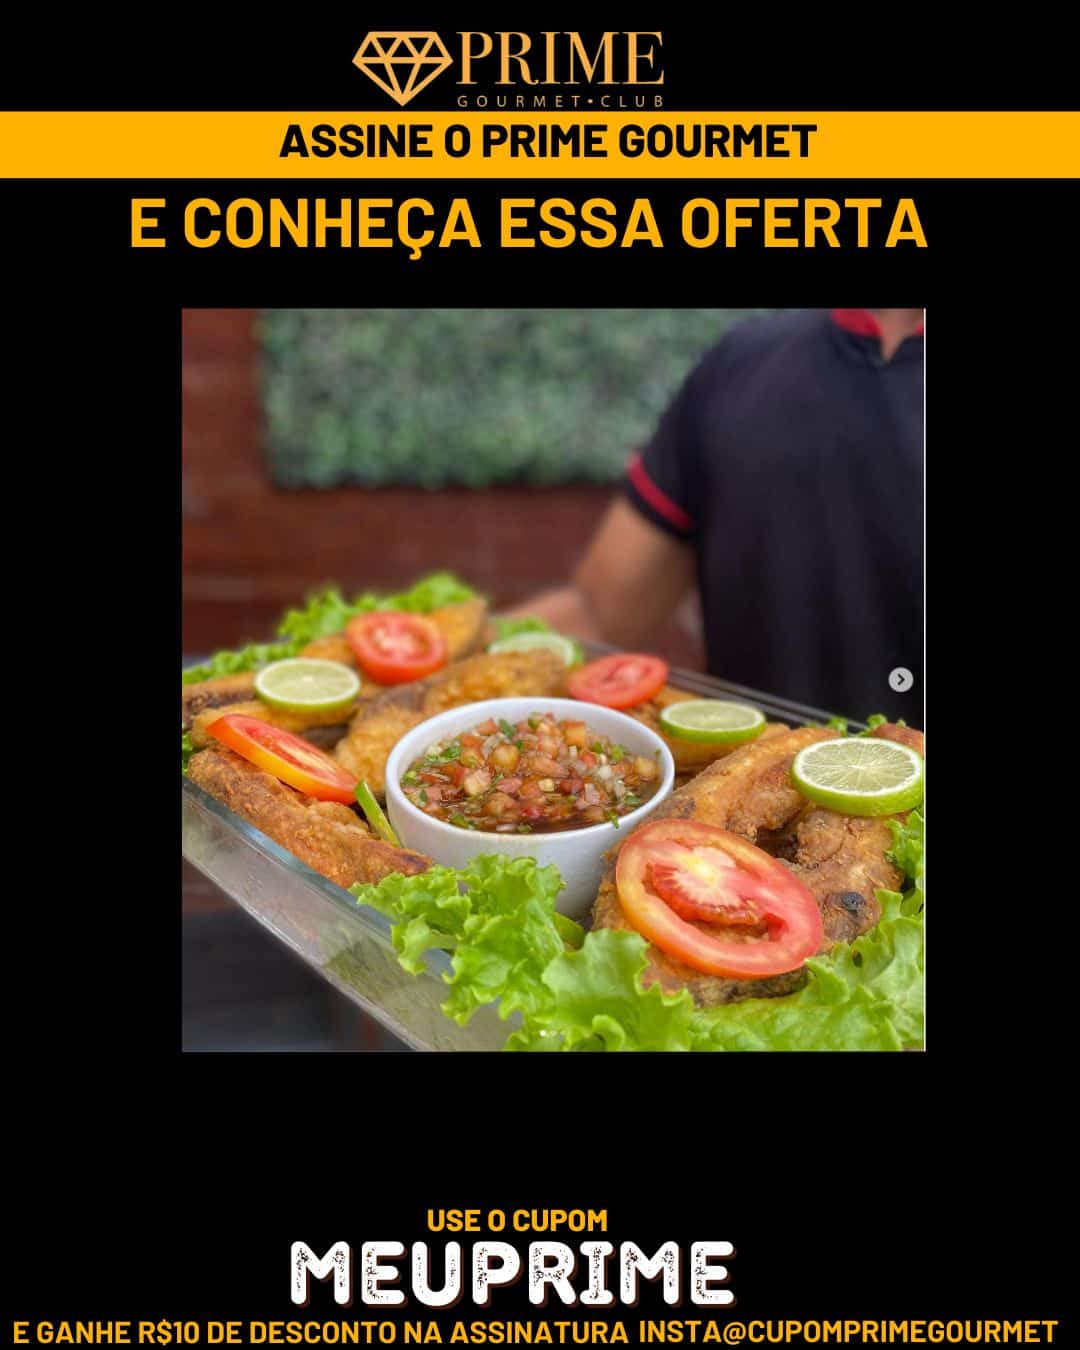 Prime Gourmet Maranhão e Região - Churrascaria do Marconi